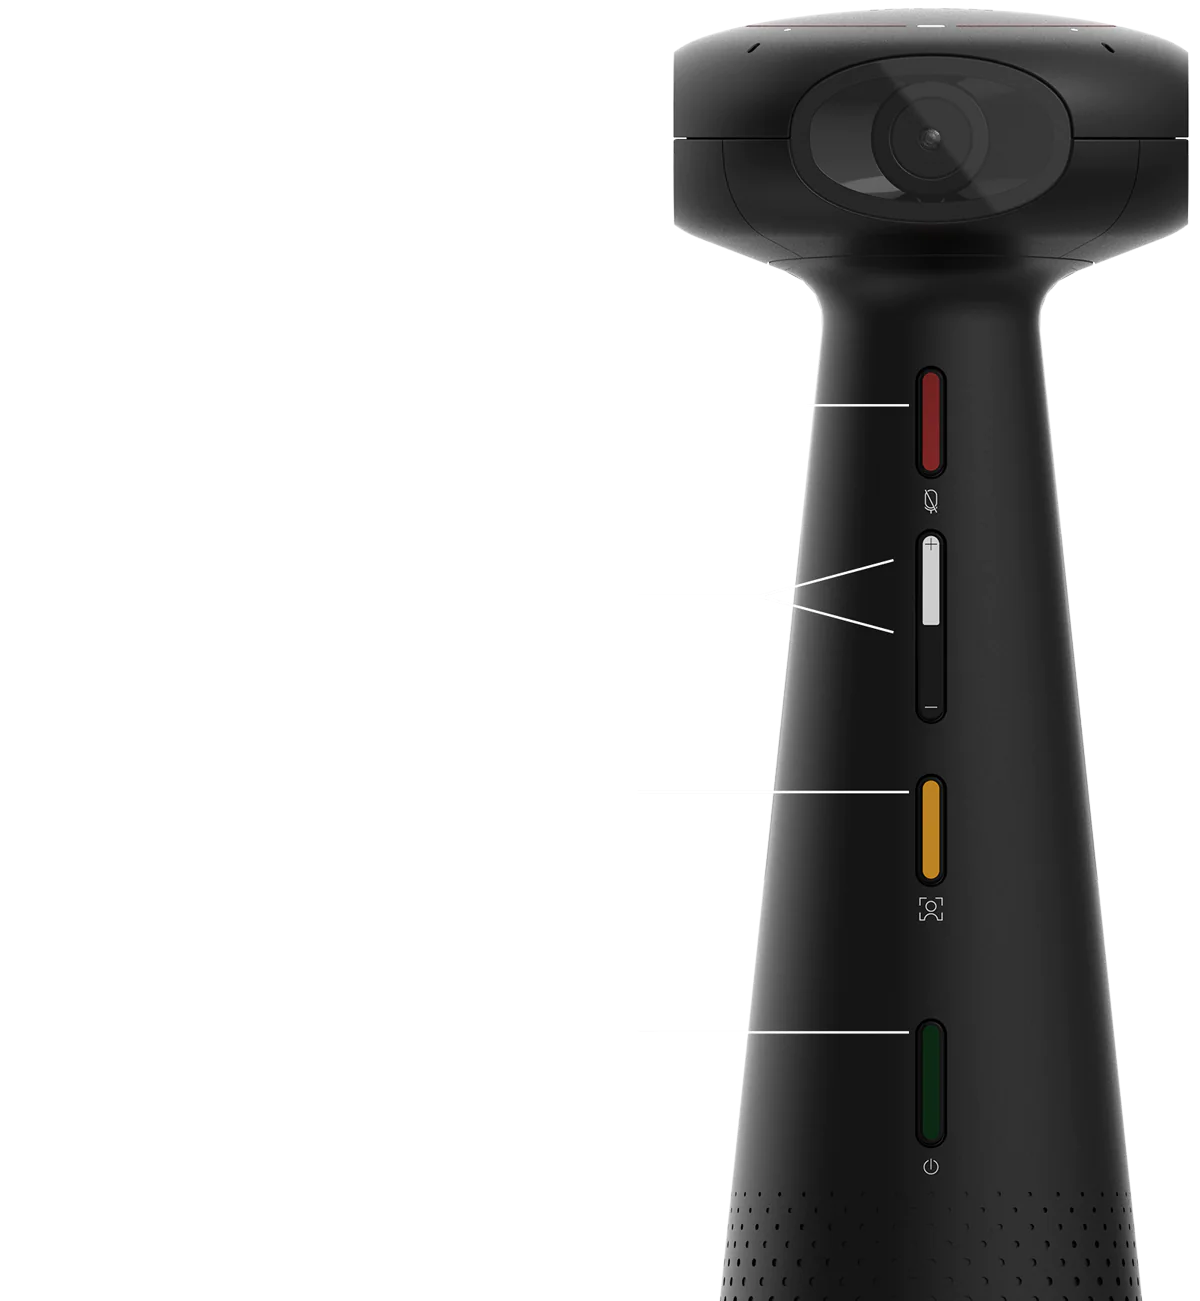 TOTEM 360のインターフェース。ボタンは正面にあり、上から、マイクのミュート切り替えボタン、2つのボリュームボタン、ビデオモードボタン、電源となっています。